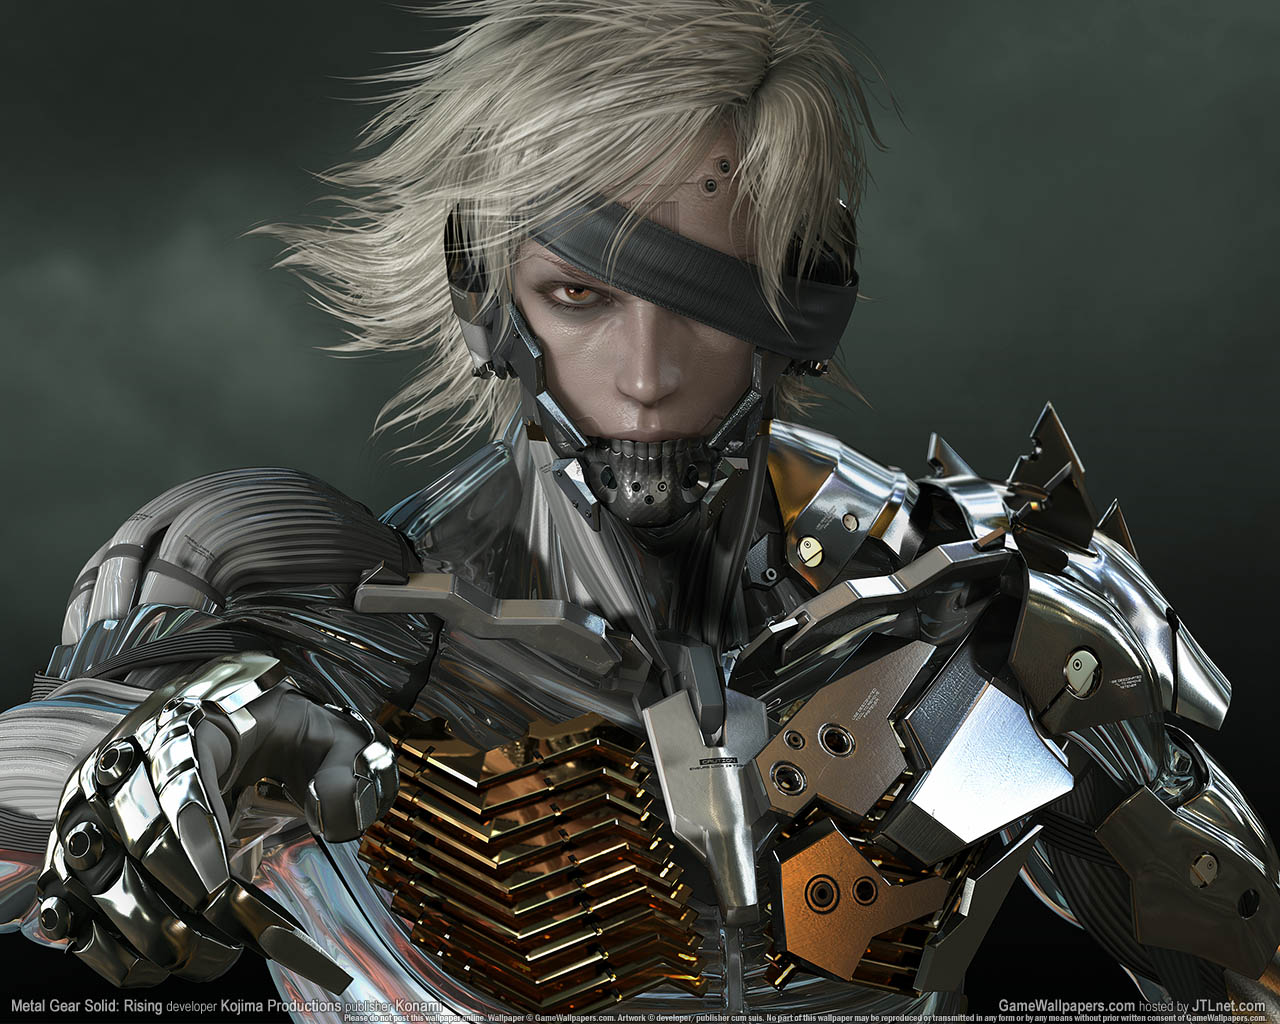 Metal Gear Rising: Revengeanceνmmer=02 achtergrond  1280x1024